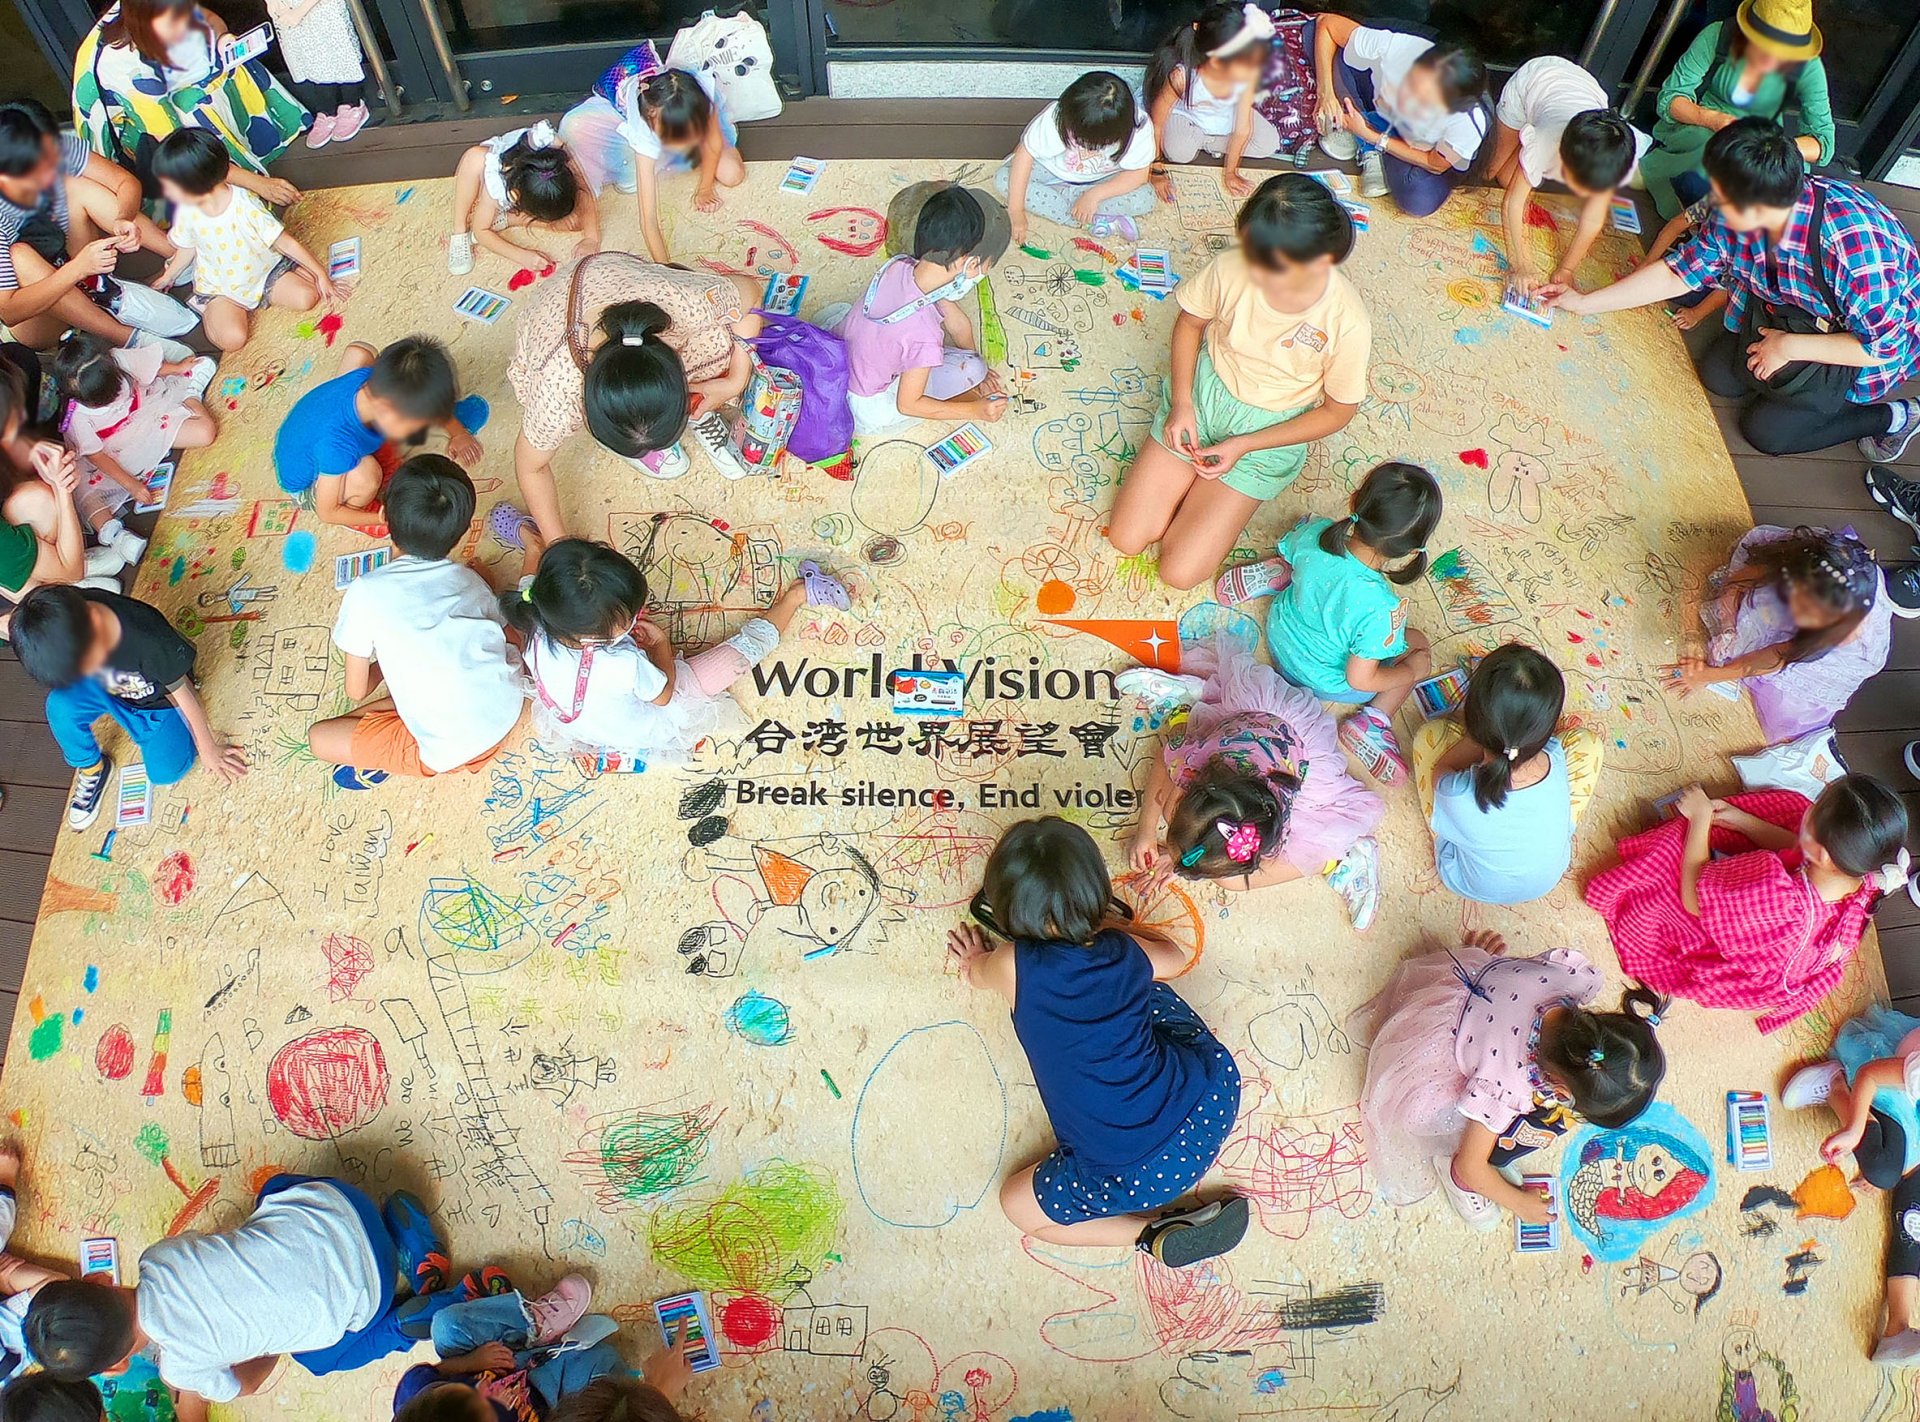 全場大小朋友在地板上自由聯合作畫，童言童語地寫下祝福。